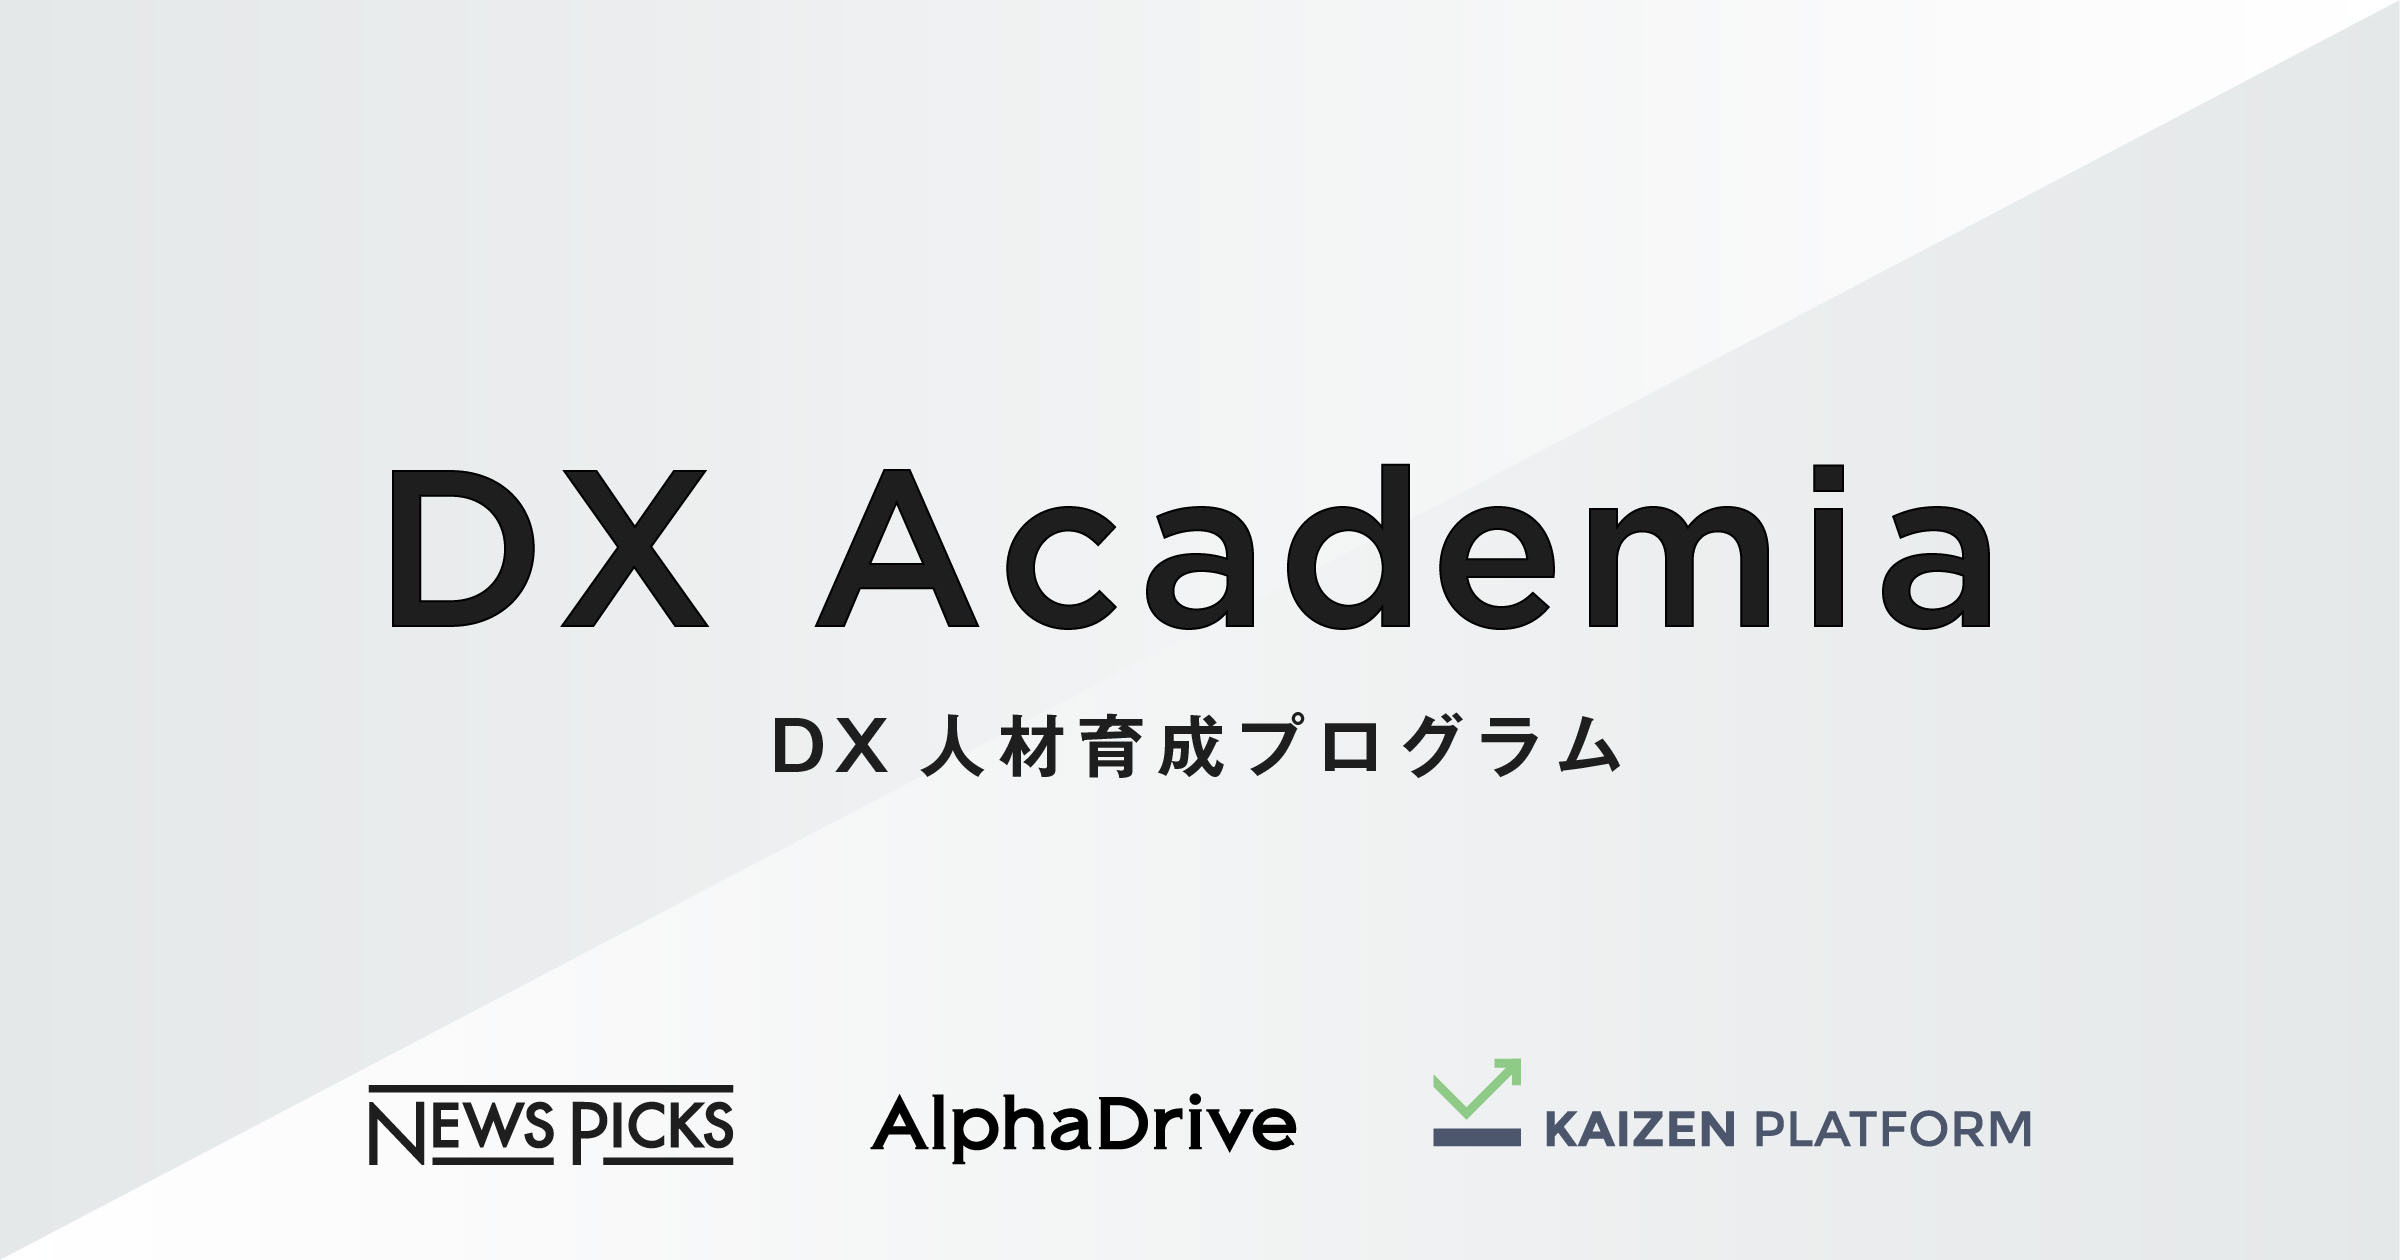 NewsPicksとAlphaDrive、企業の実践型DX人材育成プログラム「DX Academia」をKaizen  Platformと共同開発。第一弾として東京海上日動が導入 | お知らせ | 株式会社ユーザベース コーポレートサイト - Uzabase